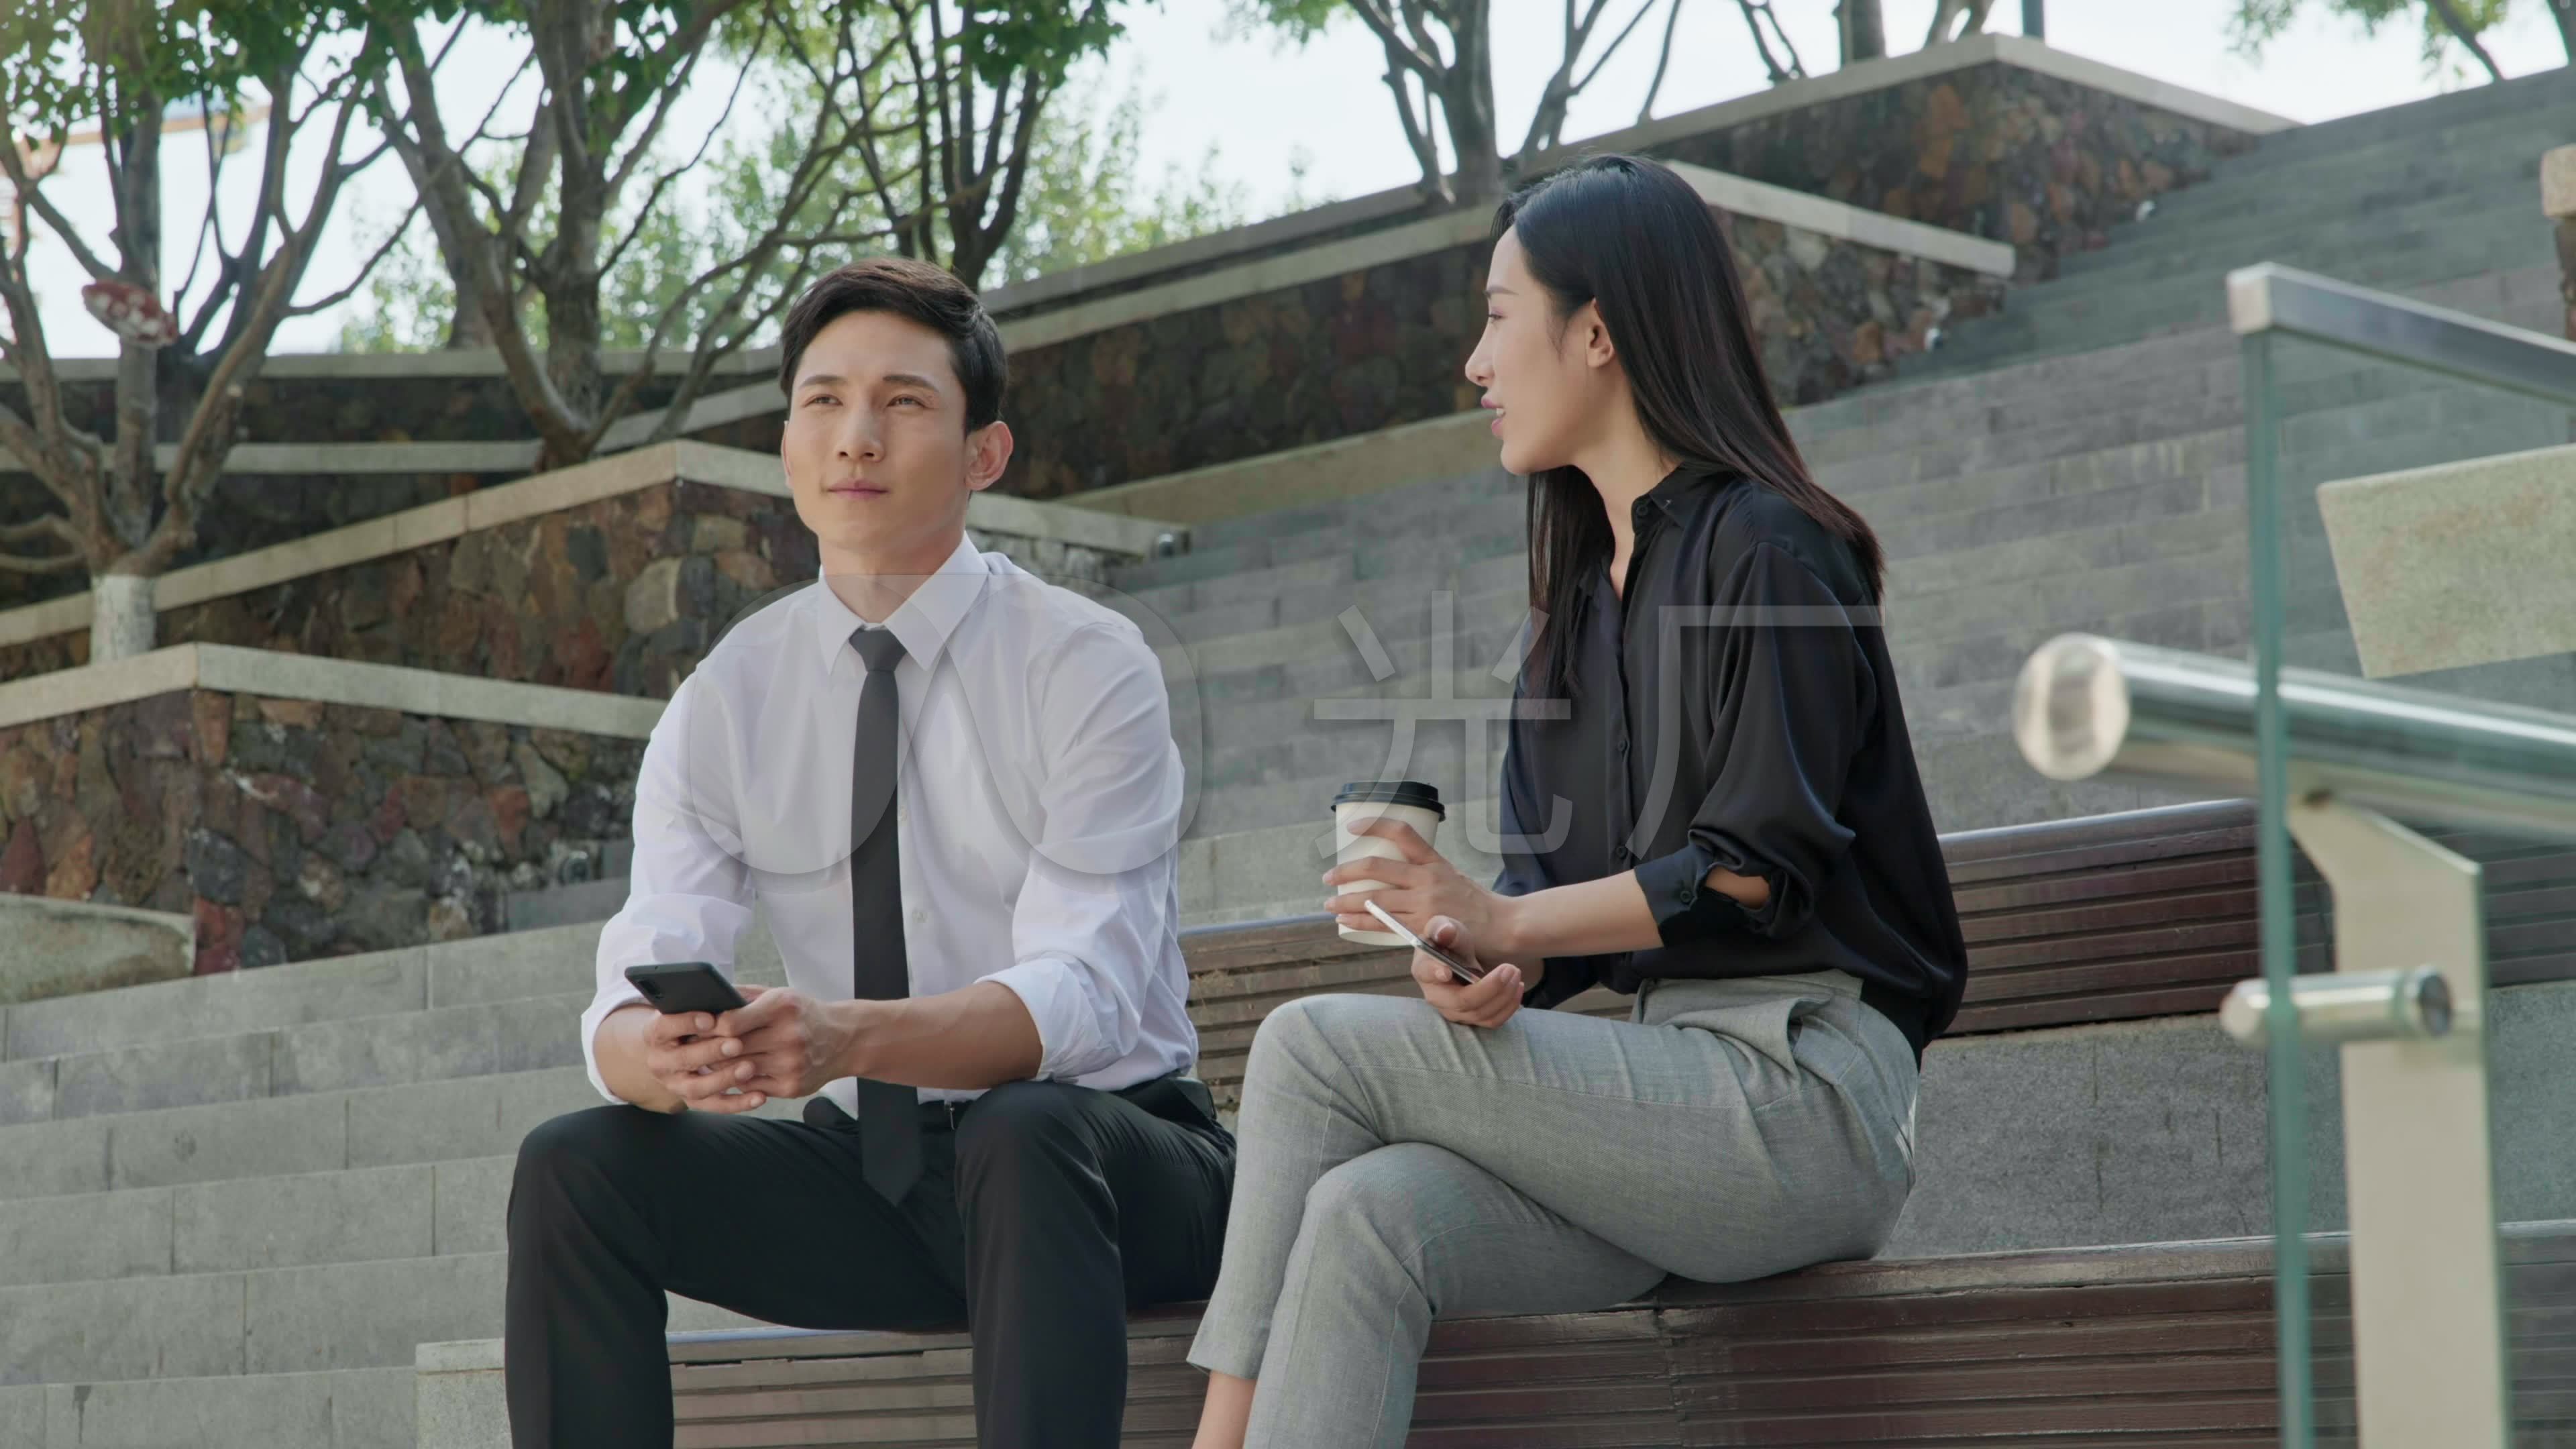 成功商务男子喝茶聊天-蓝牛仔影像-中国原创广告影像素材